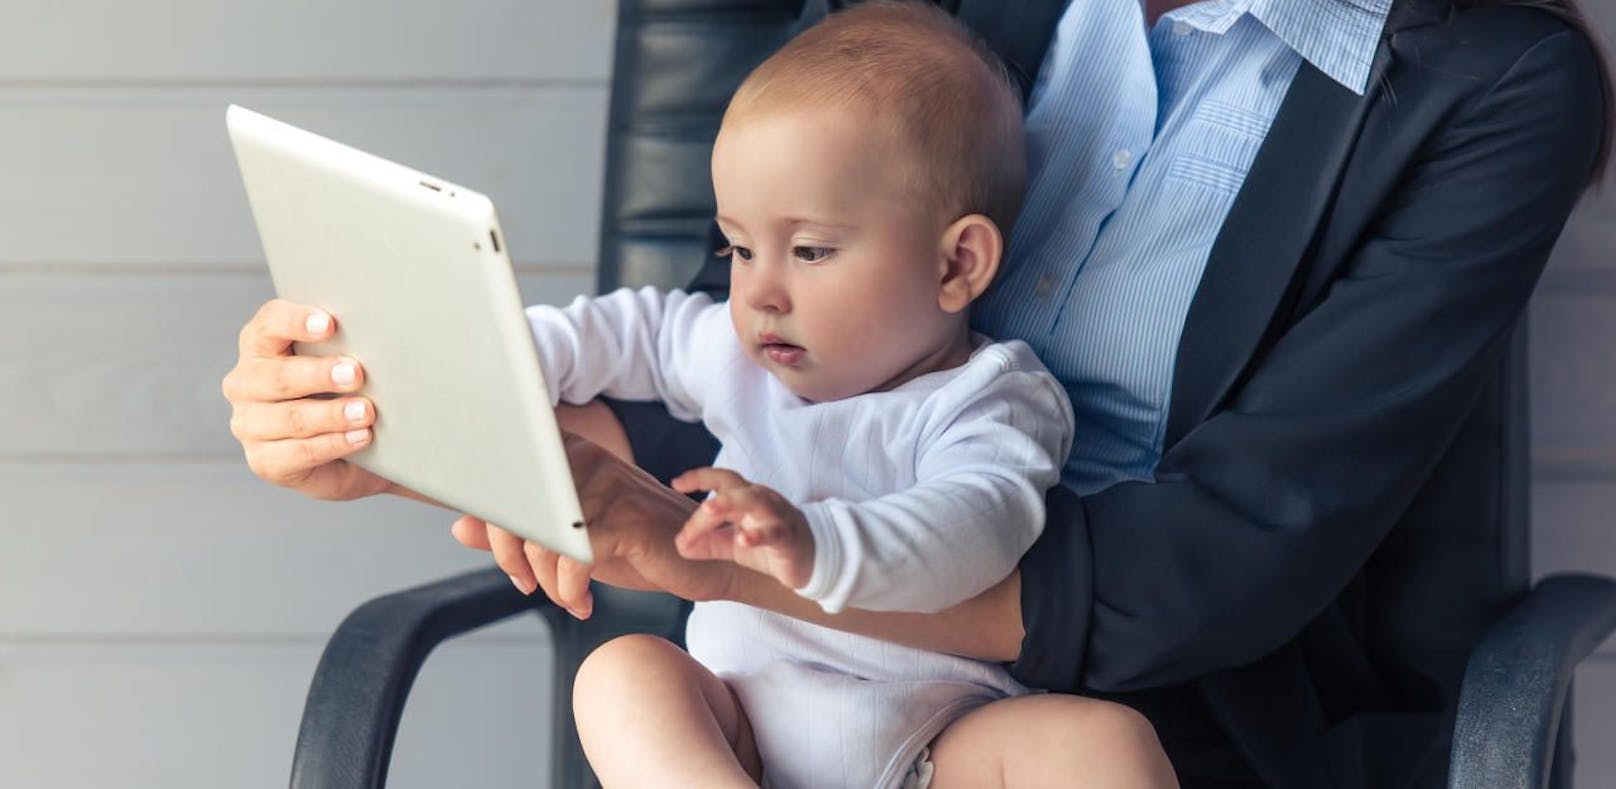 "Bildschirm-Babys" lernen später sprechen